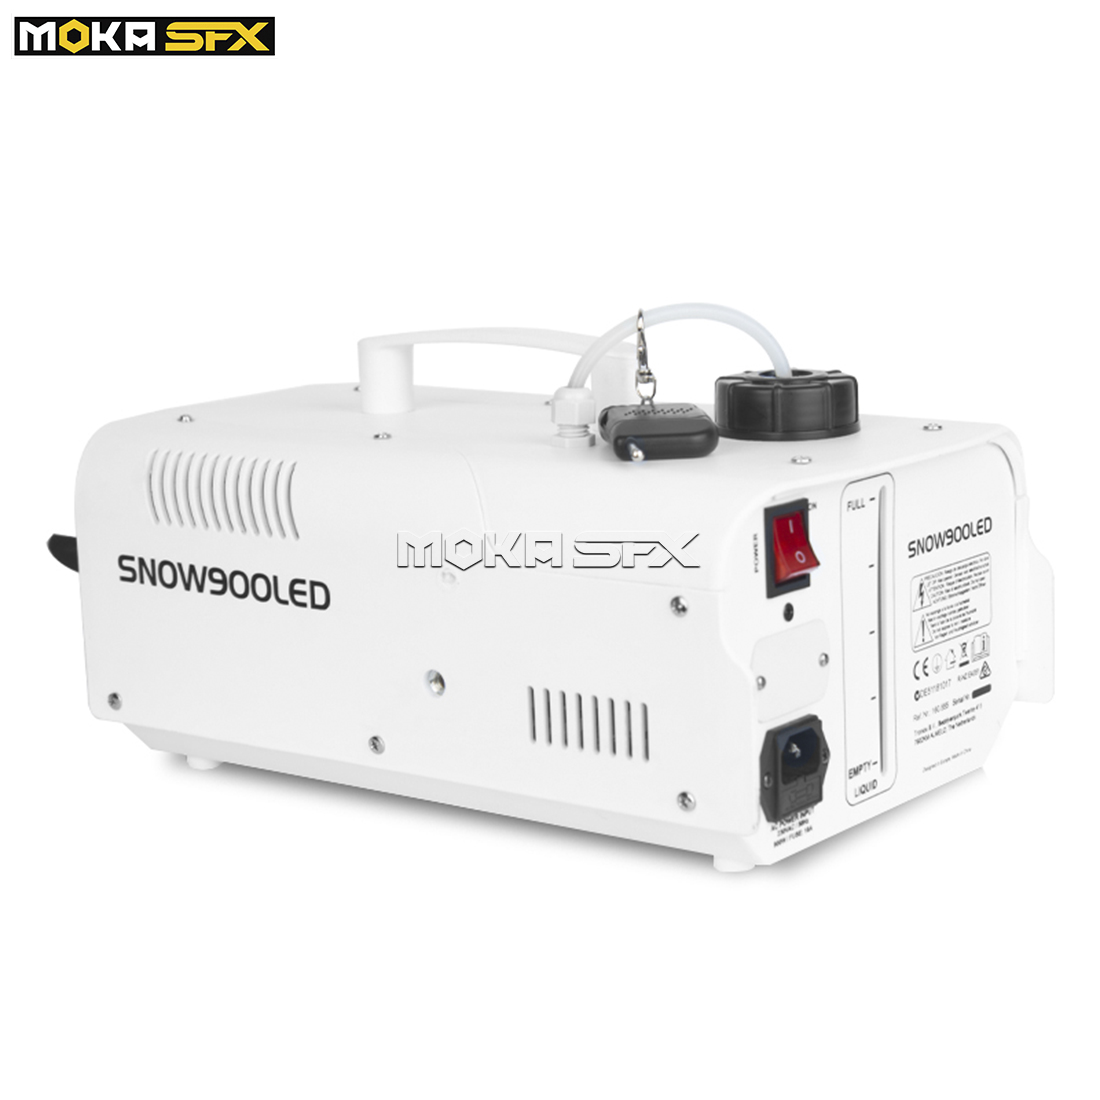 MOKA LED 6x3W RGB 3 i 1 900W Snömaskin Fjärrkontroll inomhus snöframställningsmaskin för semesterfirande bröllopsfilmer partyffekt